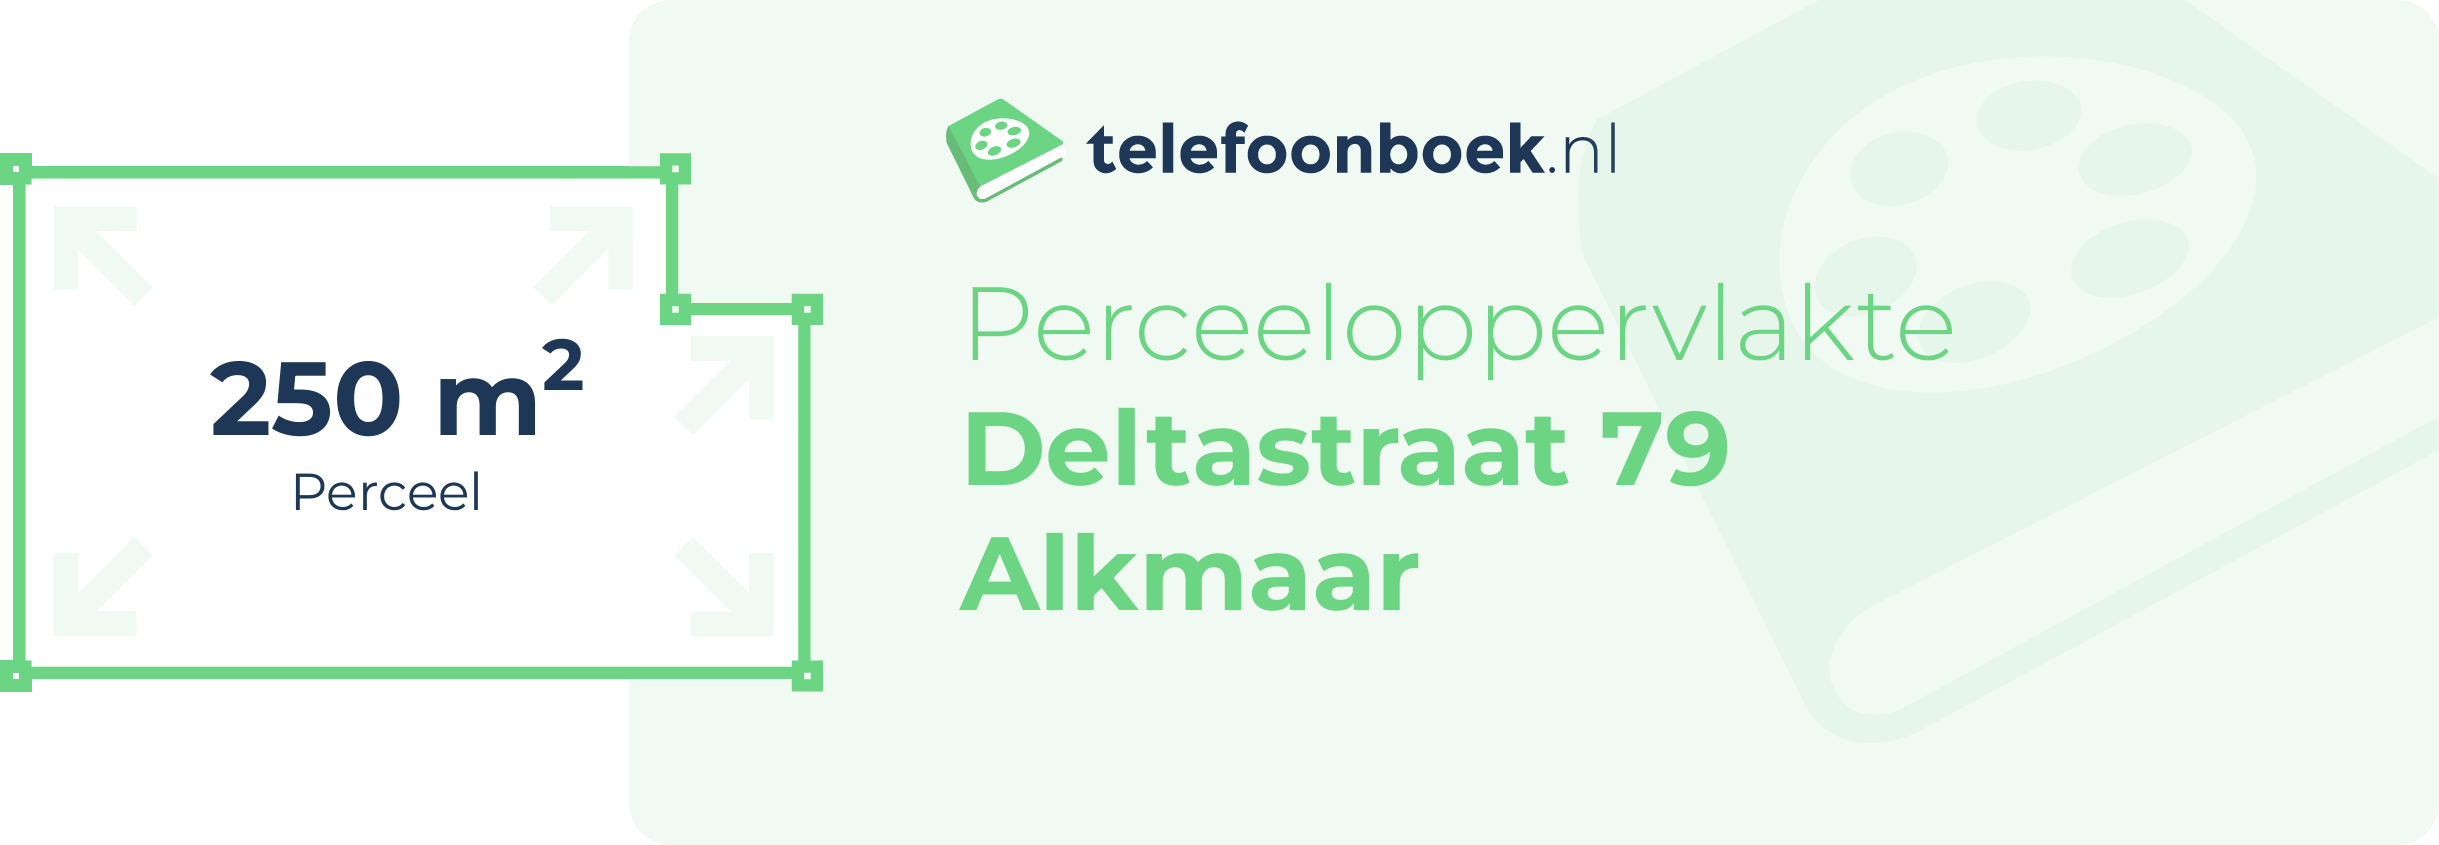 Perceeloppervlakte Deltastraat 79 Alkmaar